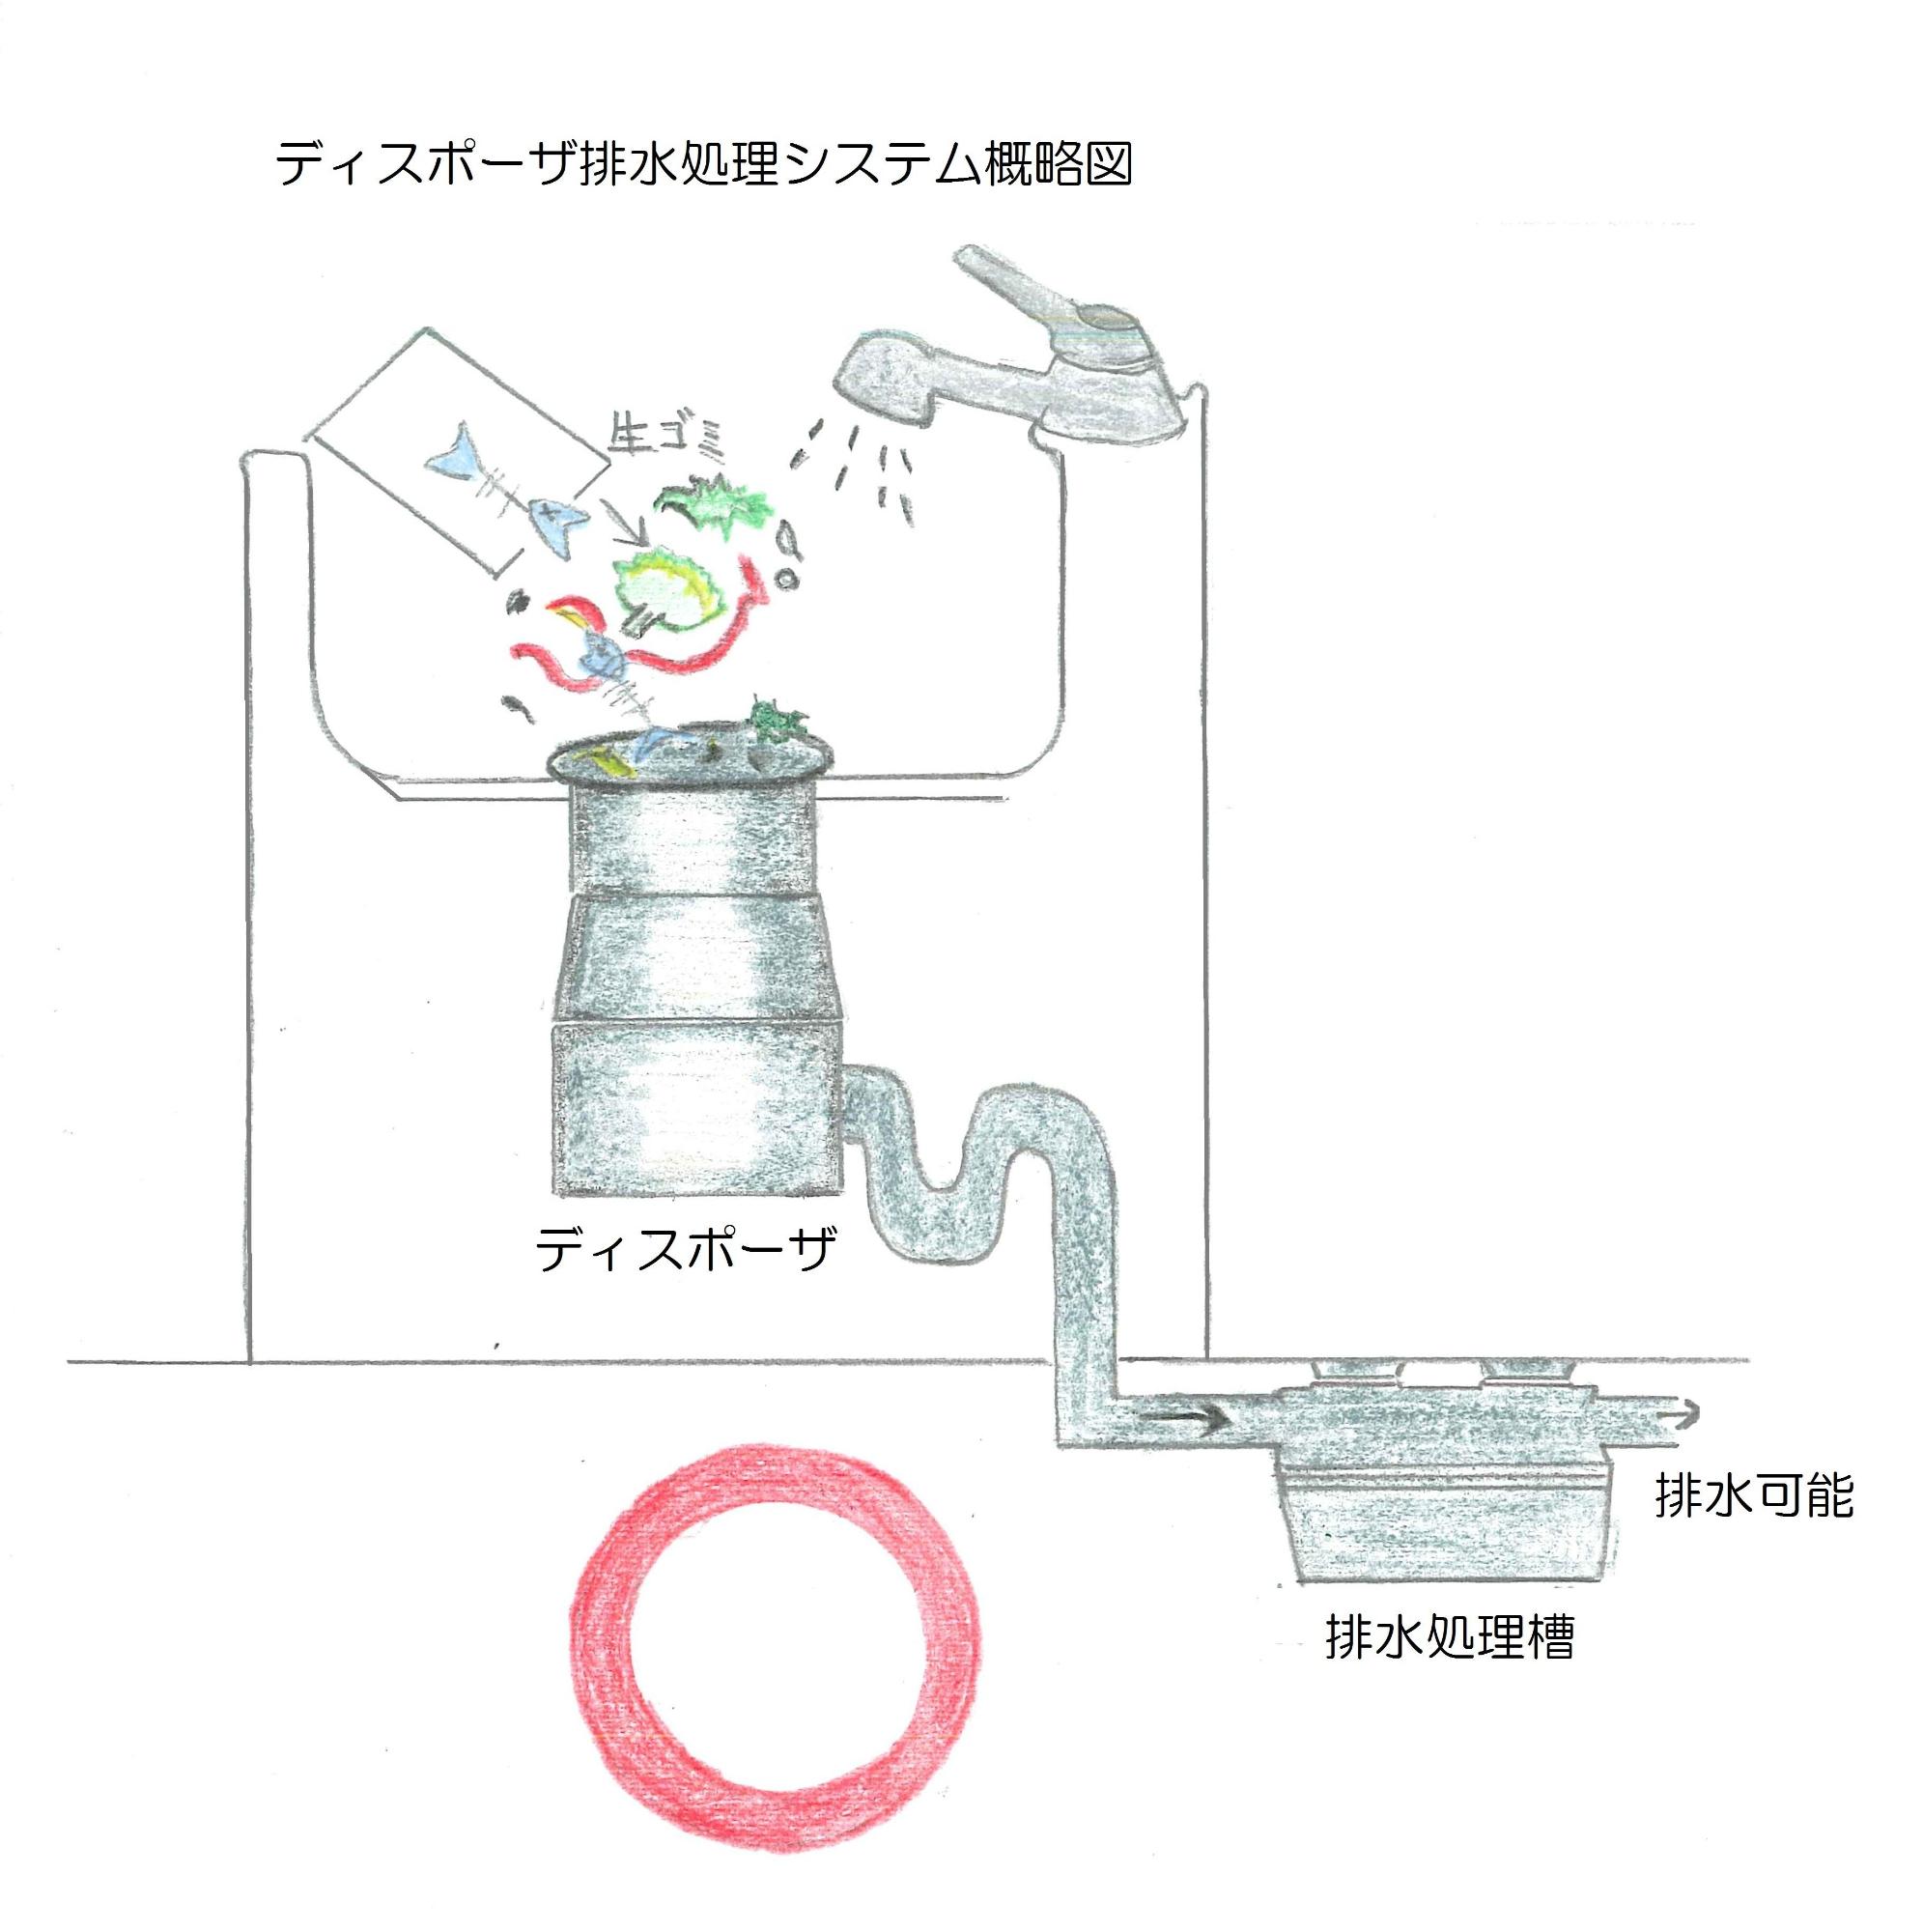 ディスポーザ排水処理システム概略図イラスト